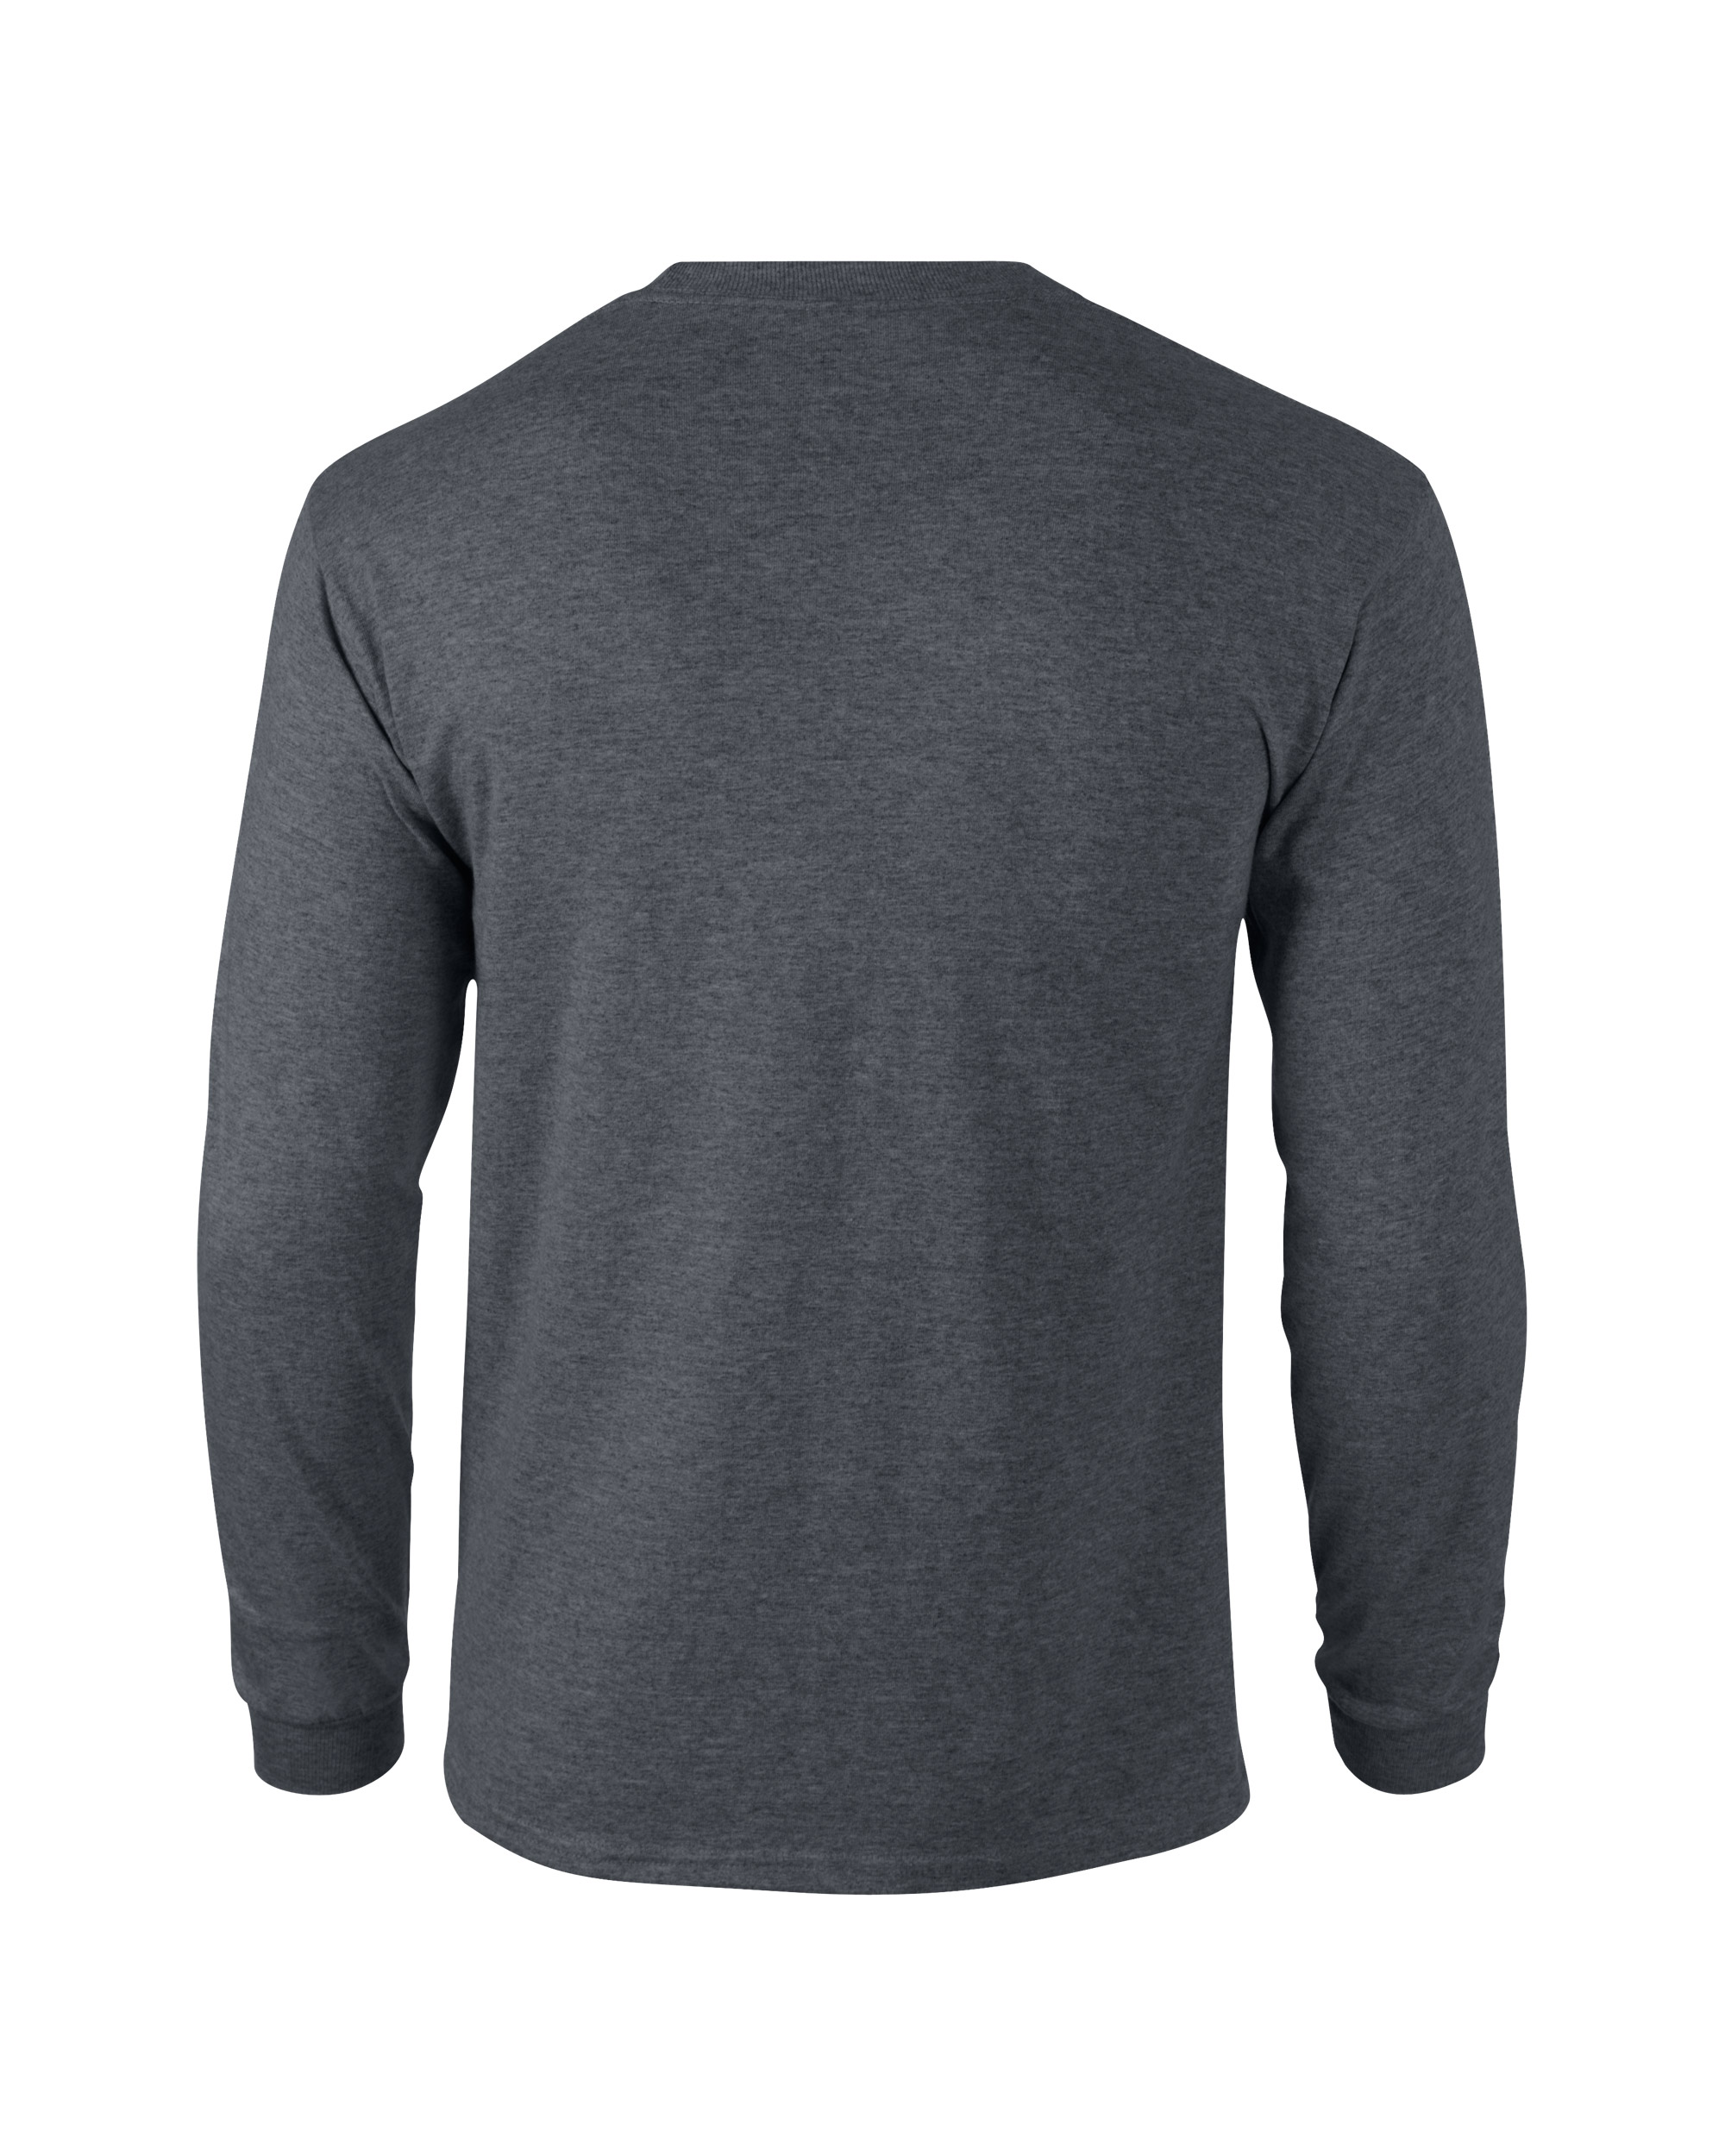 Gildan Adult Unisex Ultra Cotton Long Sleeve T-Shirt ...